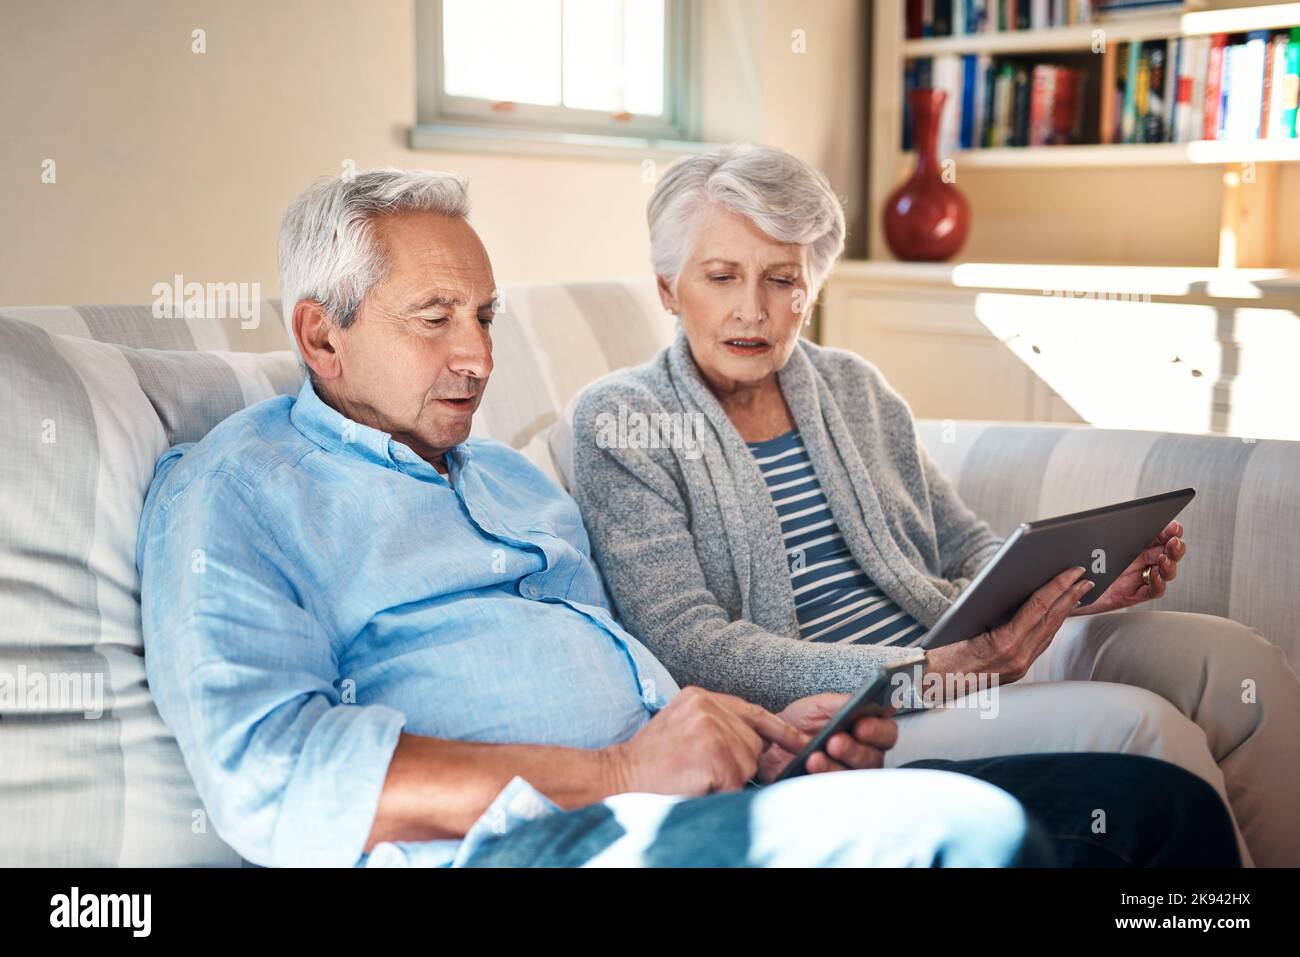 Se familiariser avec les gadgets intelligents dans leurs années d'or. Un couple senior utilisant leurs appareils intelligents sur le canapé à la maison. Banque D'Images